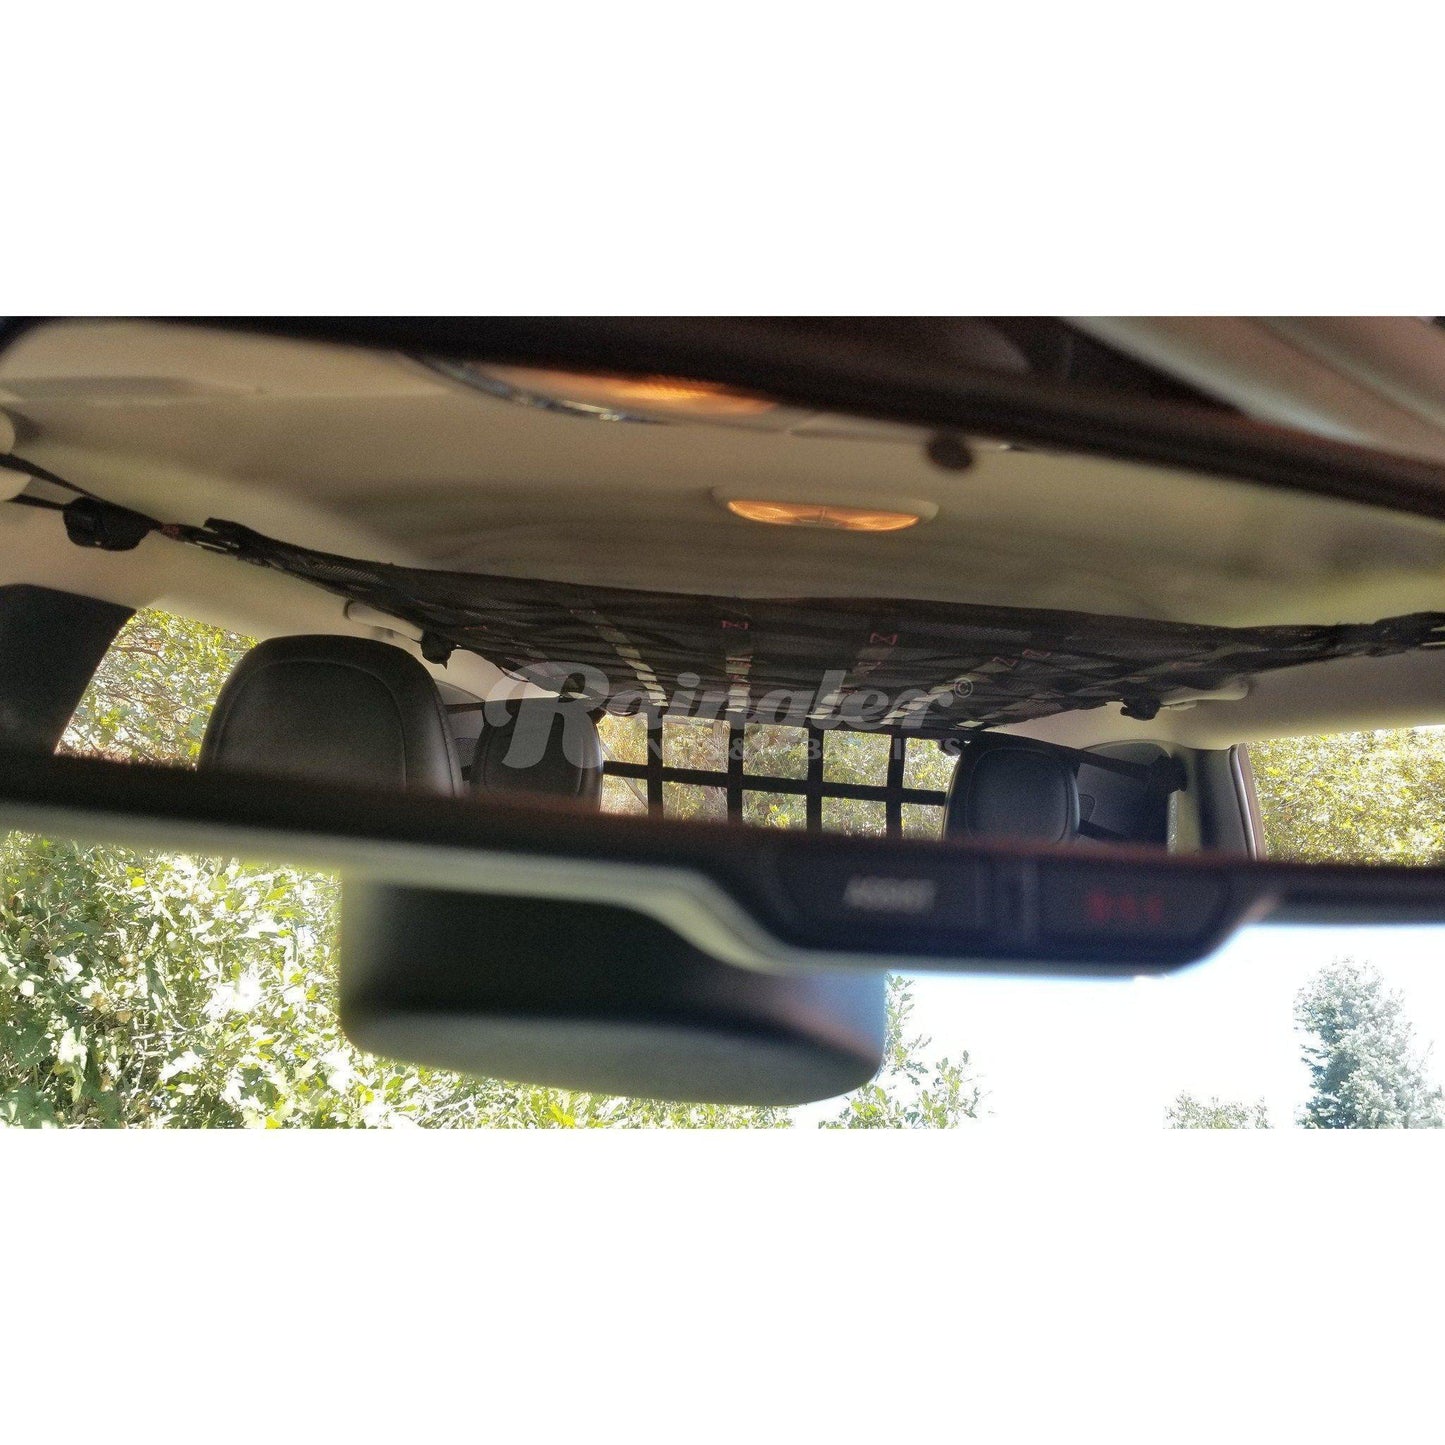 2014 - Newer Jeep Cherokee (KL) Full Ceiling Attic Net-Raingler